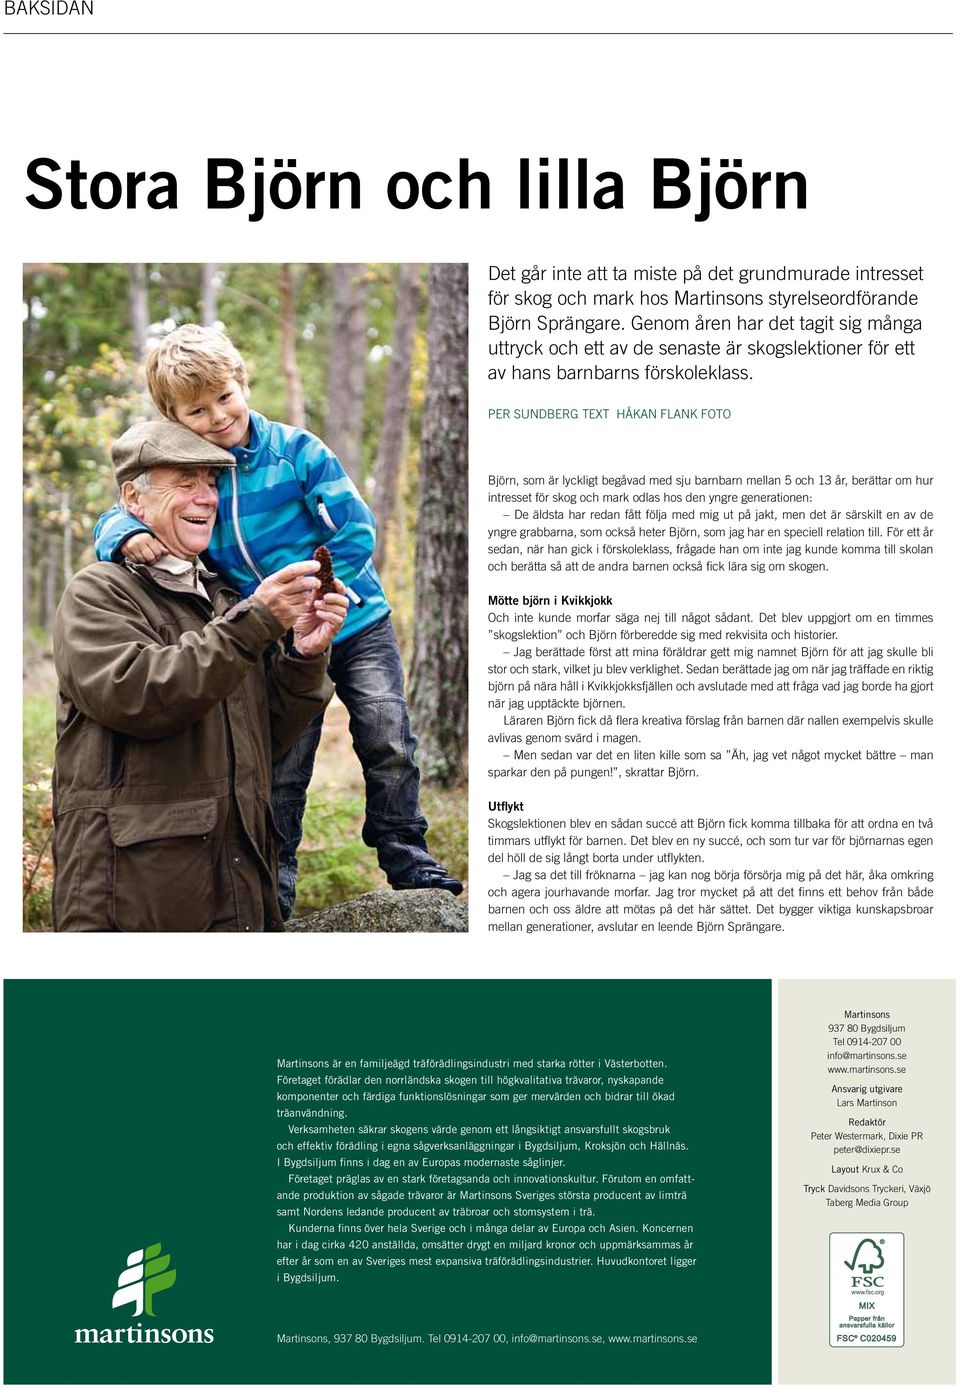 PER SUNDBERG Text håkan flank Foto Björn, som är lyckligt begåvad med sju barnbarn mellan 5 och 13 år, berättar om hur intresset för skog och mark odlas hos den yngre generationen: De äldsta har